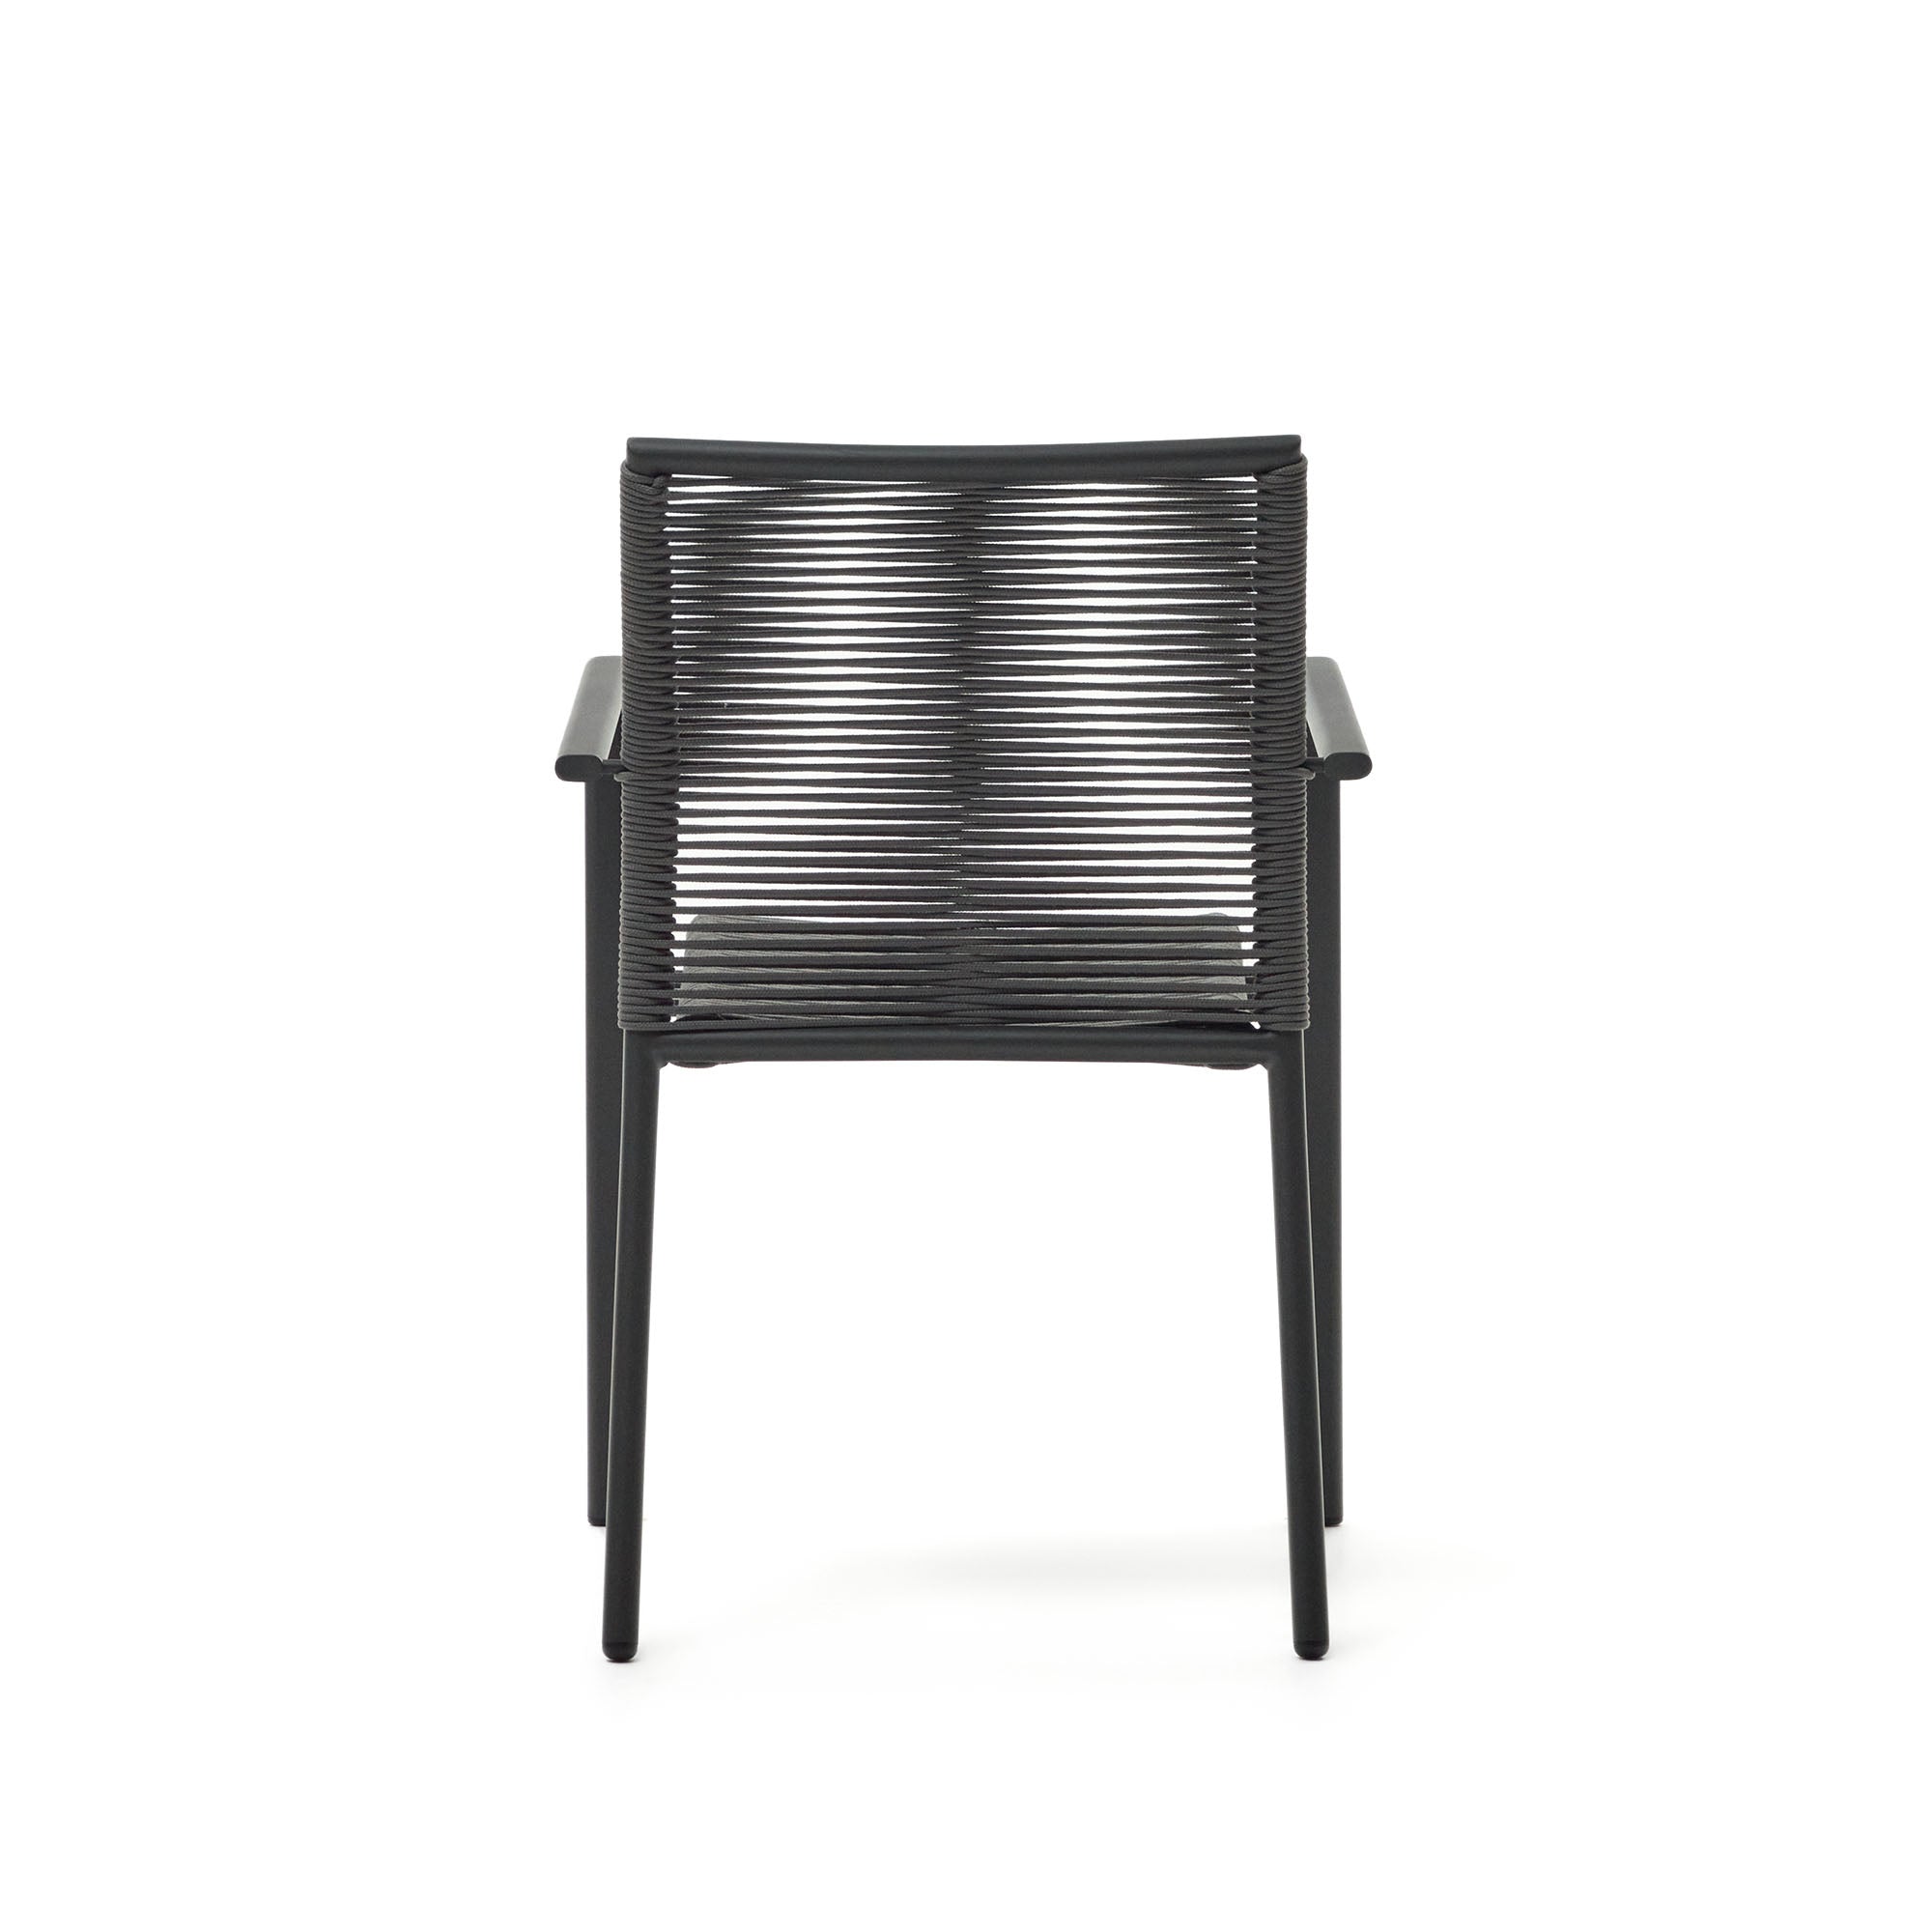 Culip alumíniumból és zsinórból készült, egymásba rakható kültéri szék szürke színben